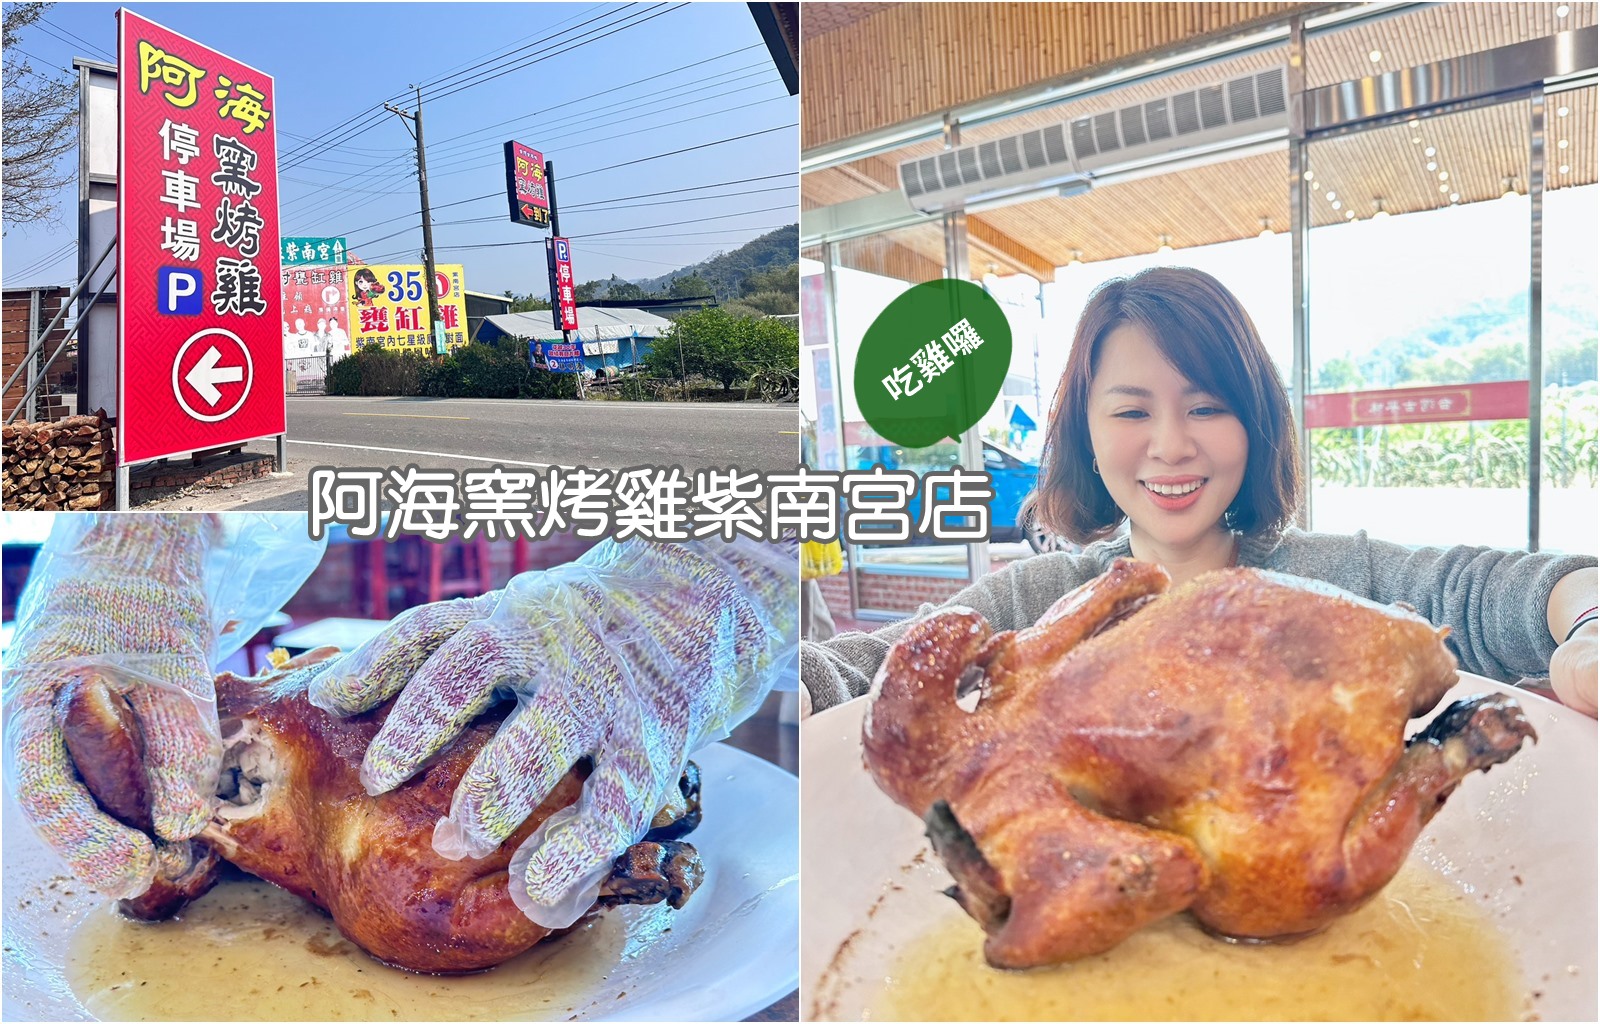 阿海窯烤雞紫南宮店 遵循古法現點現烤放山雞 有免費停車場